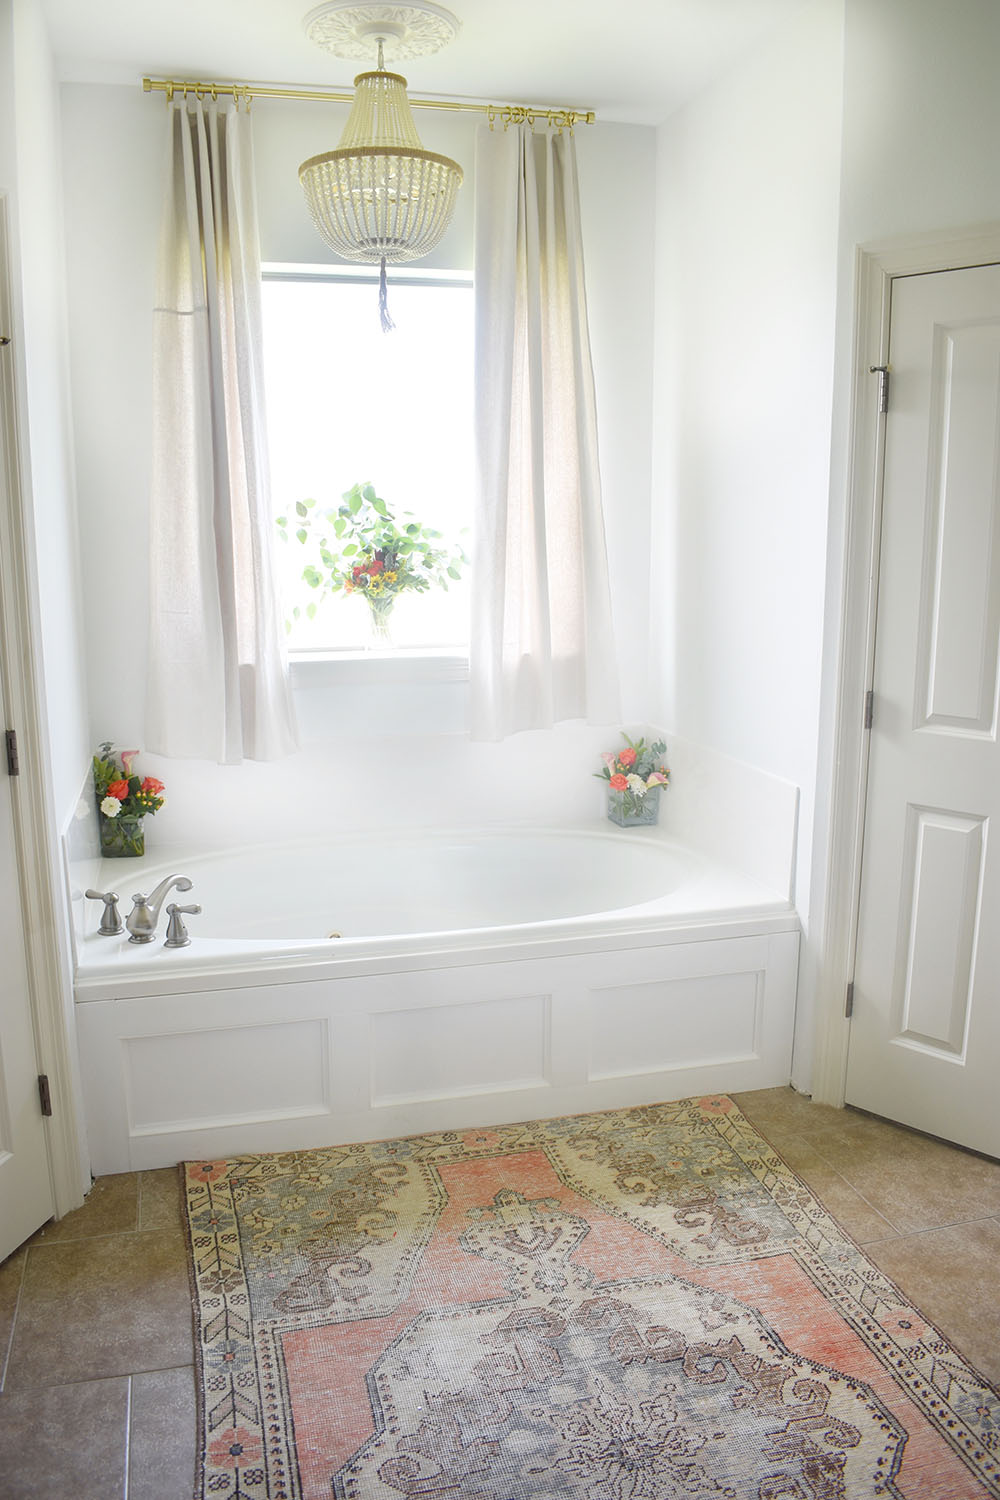 How To Add Decorative Moulding A Bathtub, Bathtub Floor Trim